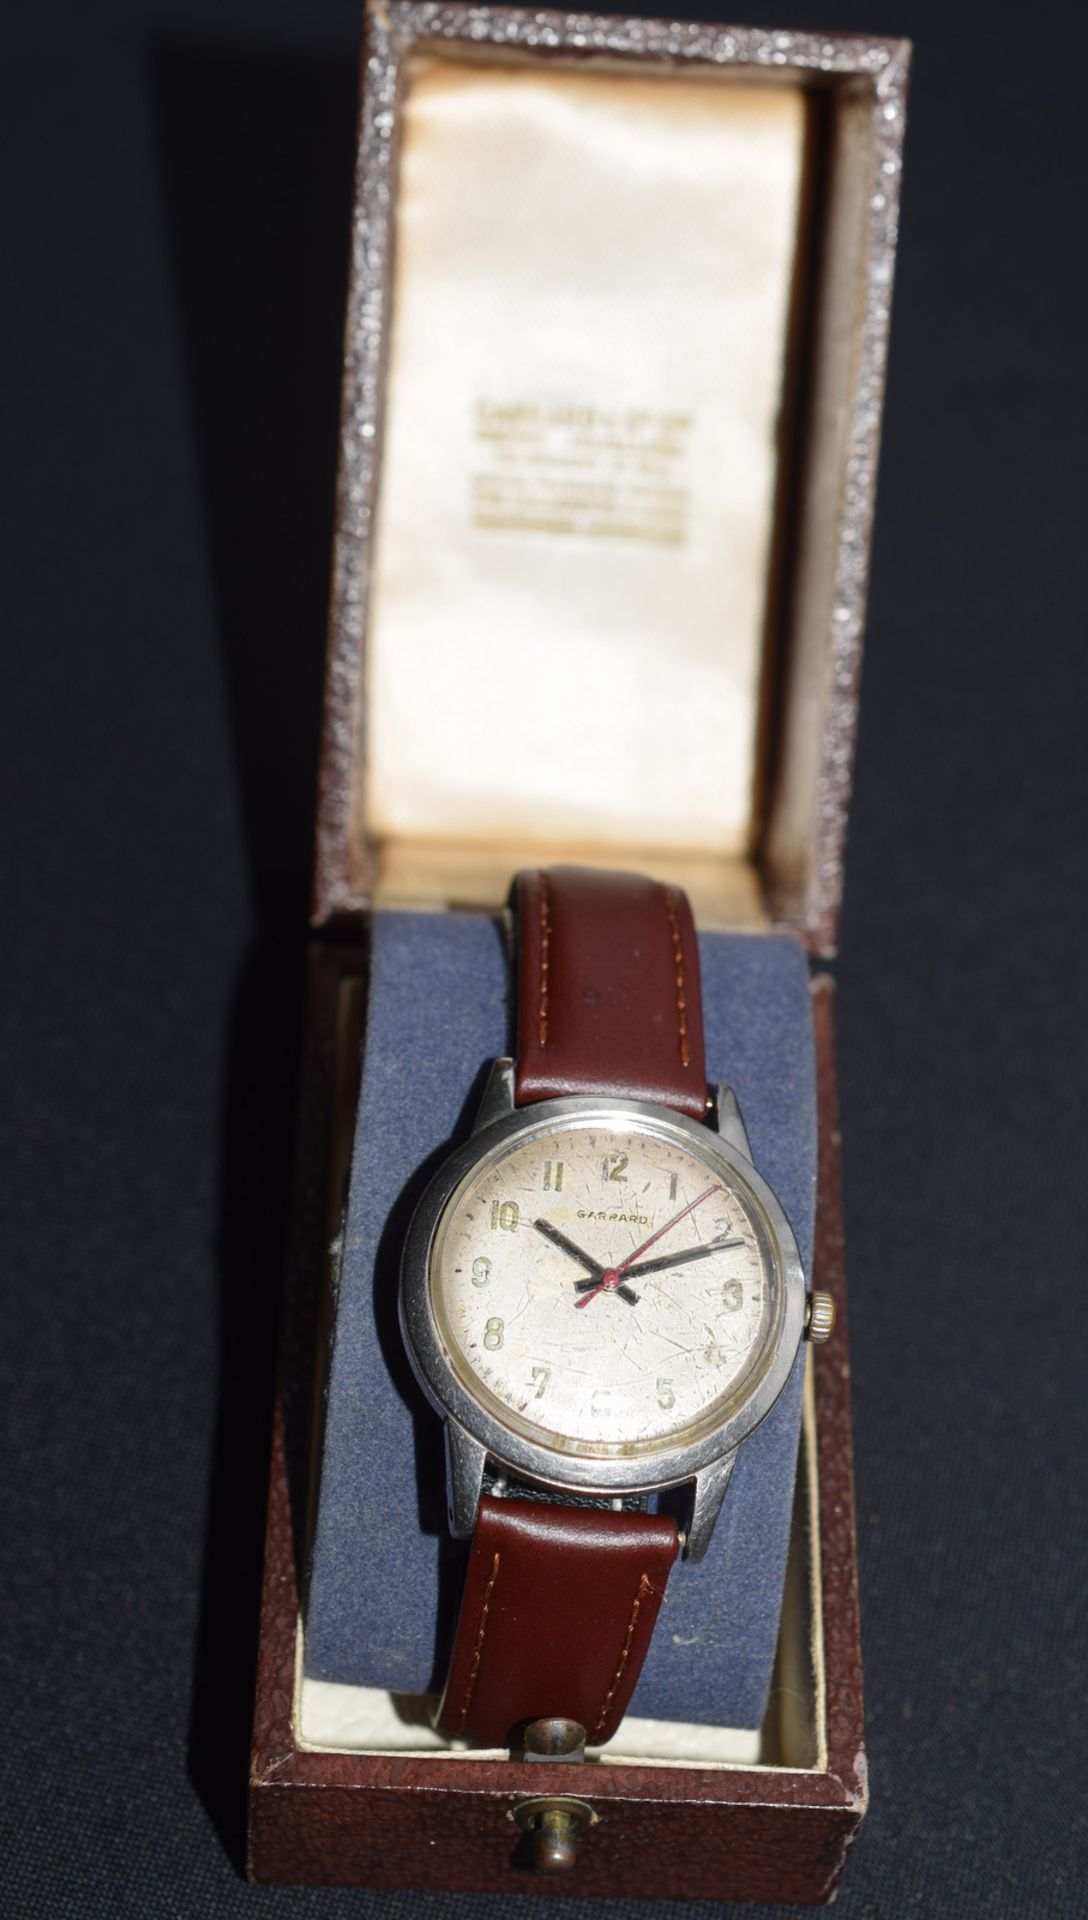 Garrard Manual Wind Watch In Original Box - no reserve